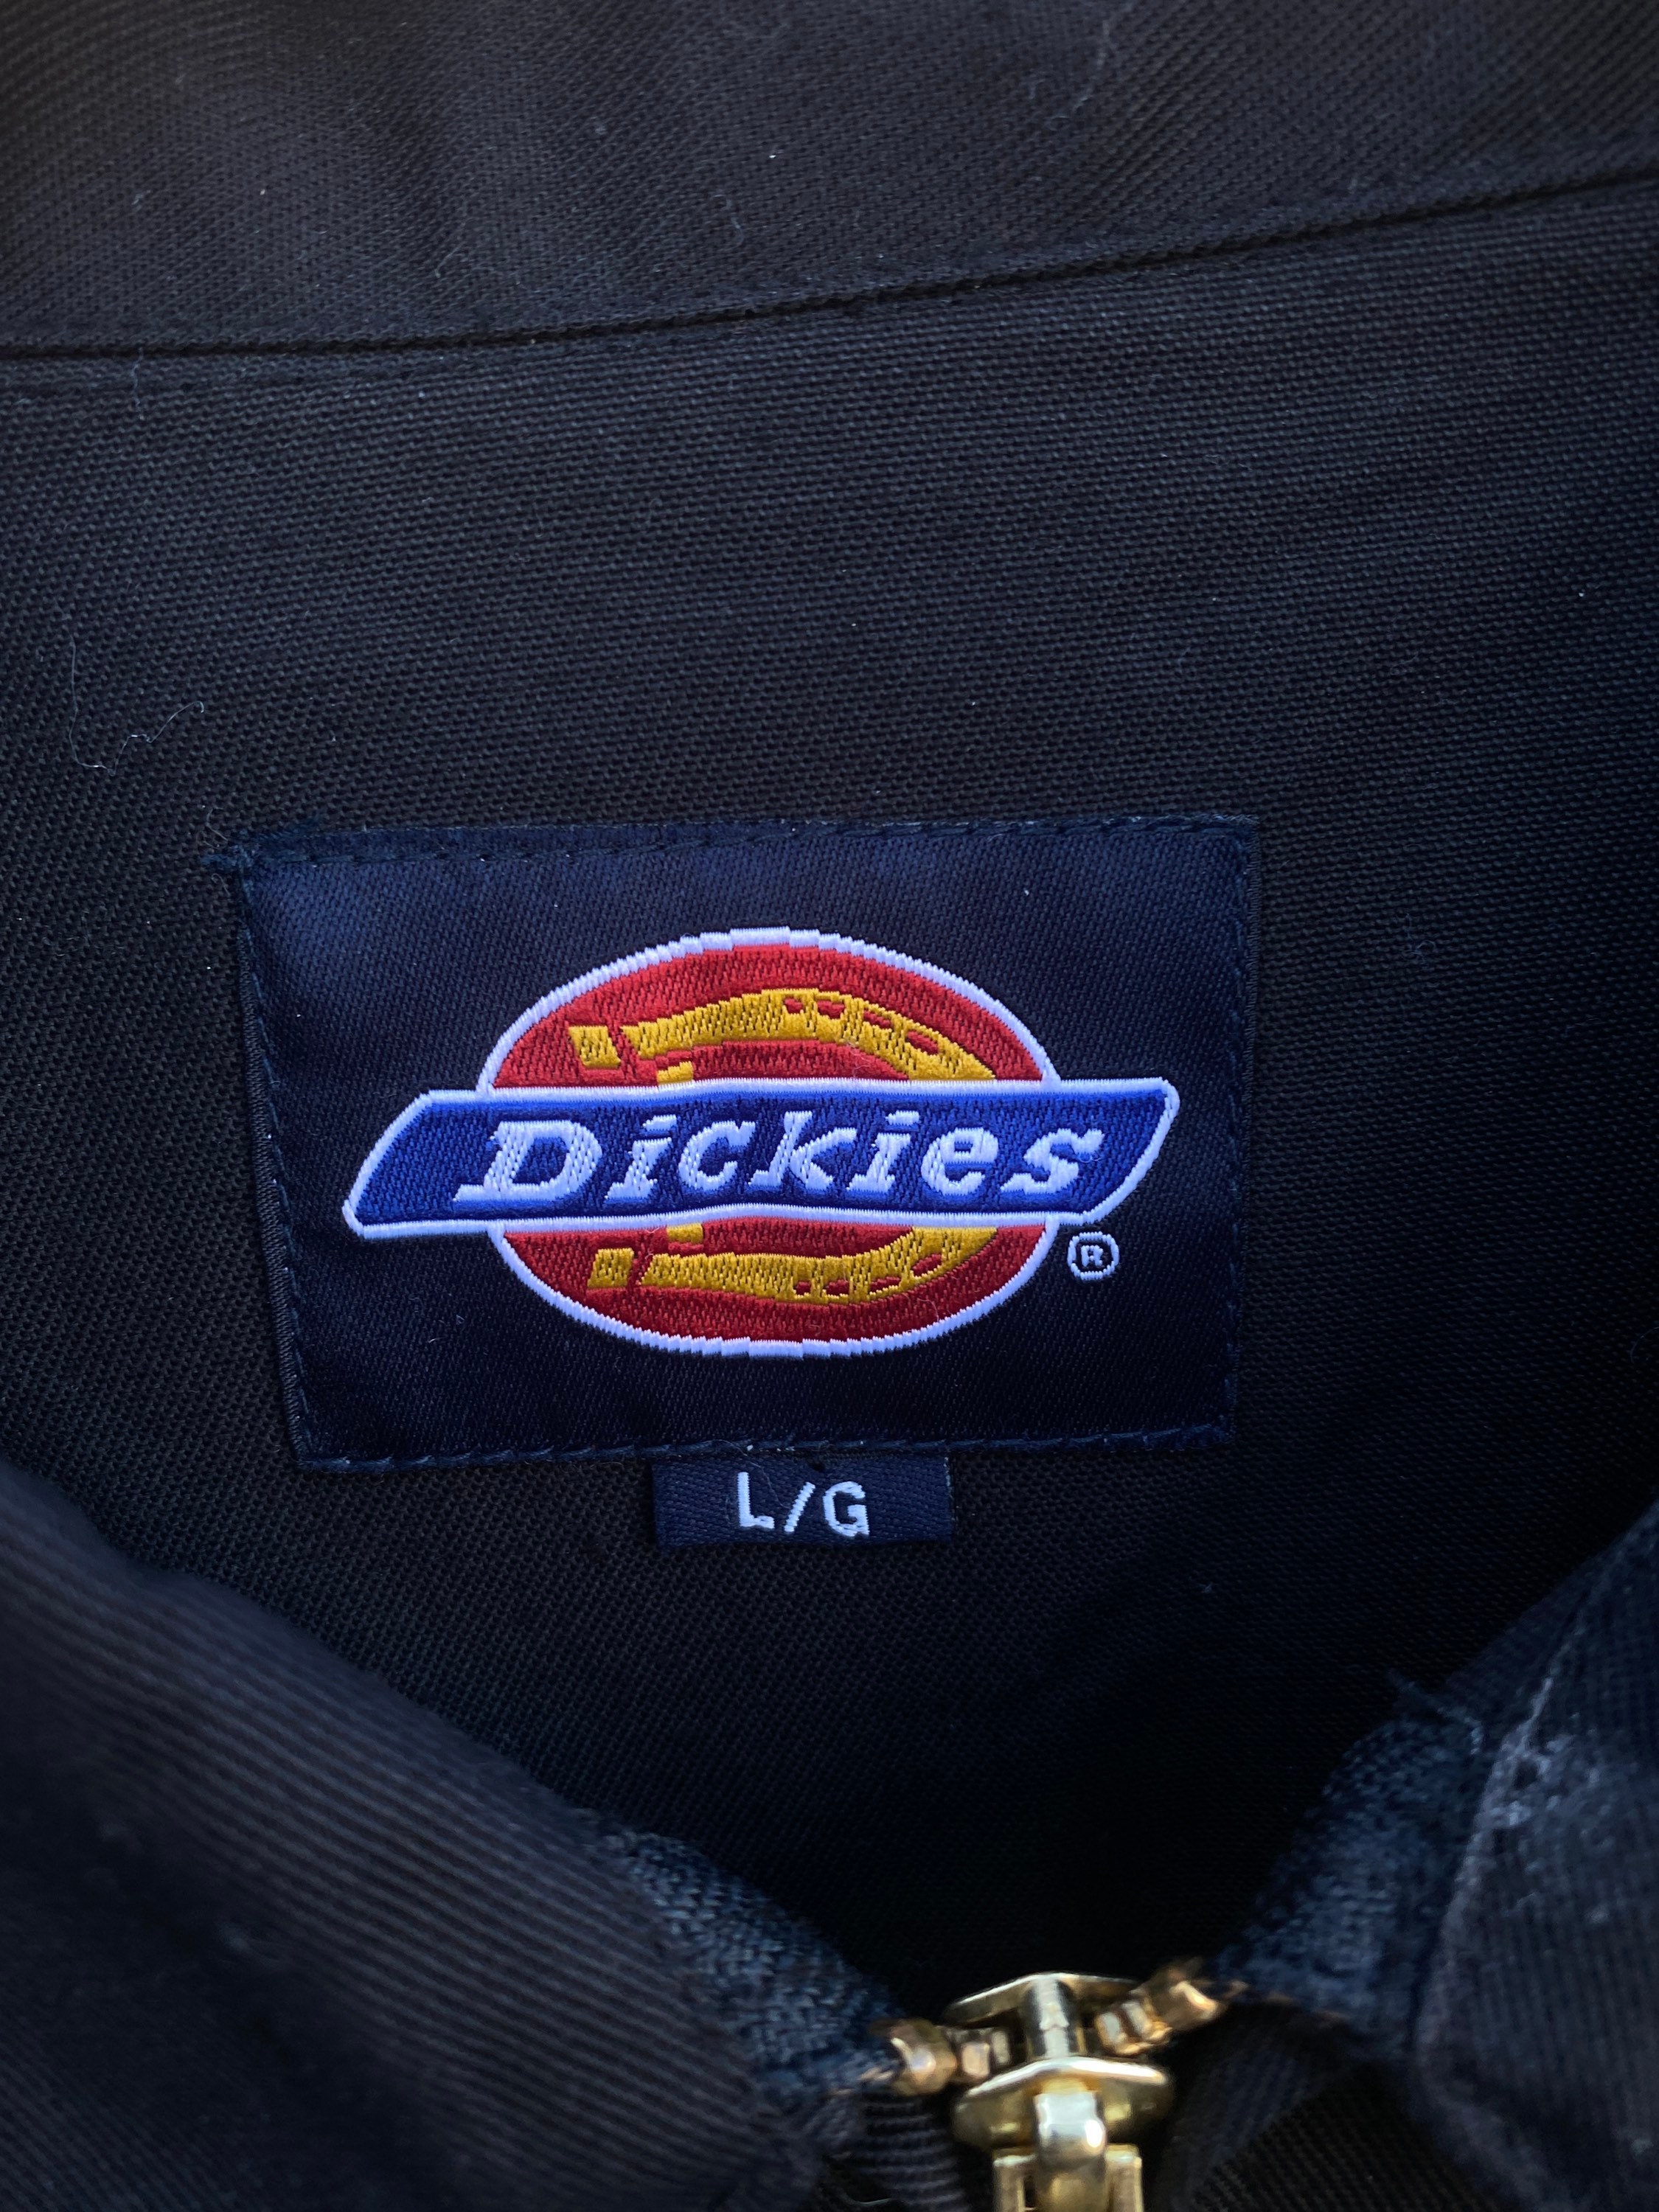 Vintage 90s Dickies Black Work Jacket / Patchwork / Vintage Denim ...